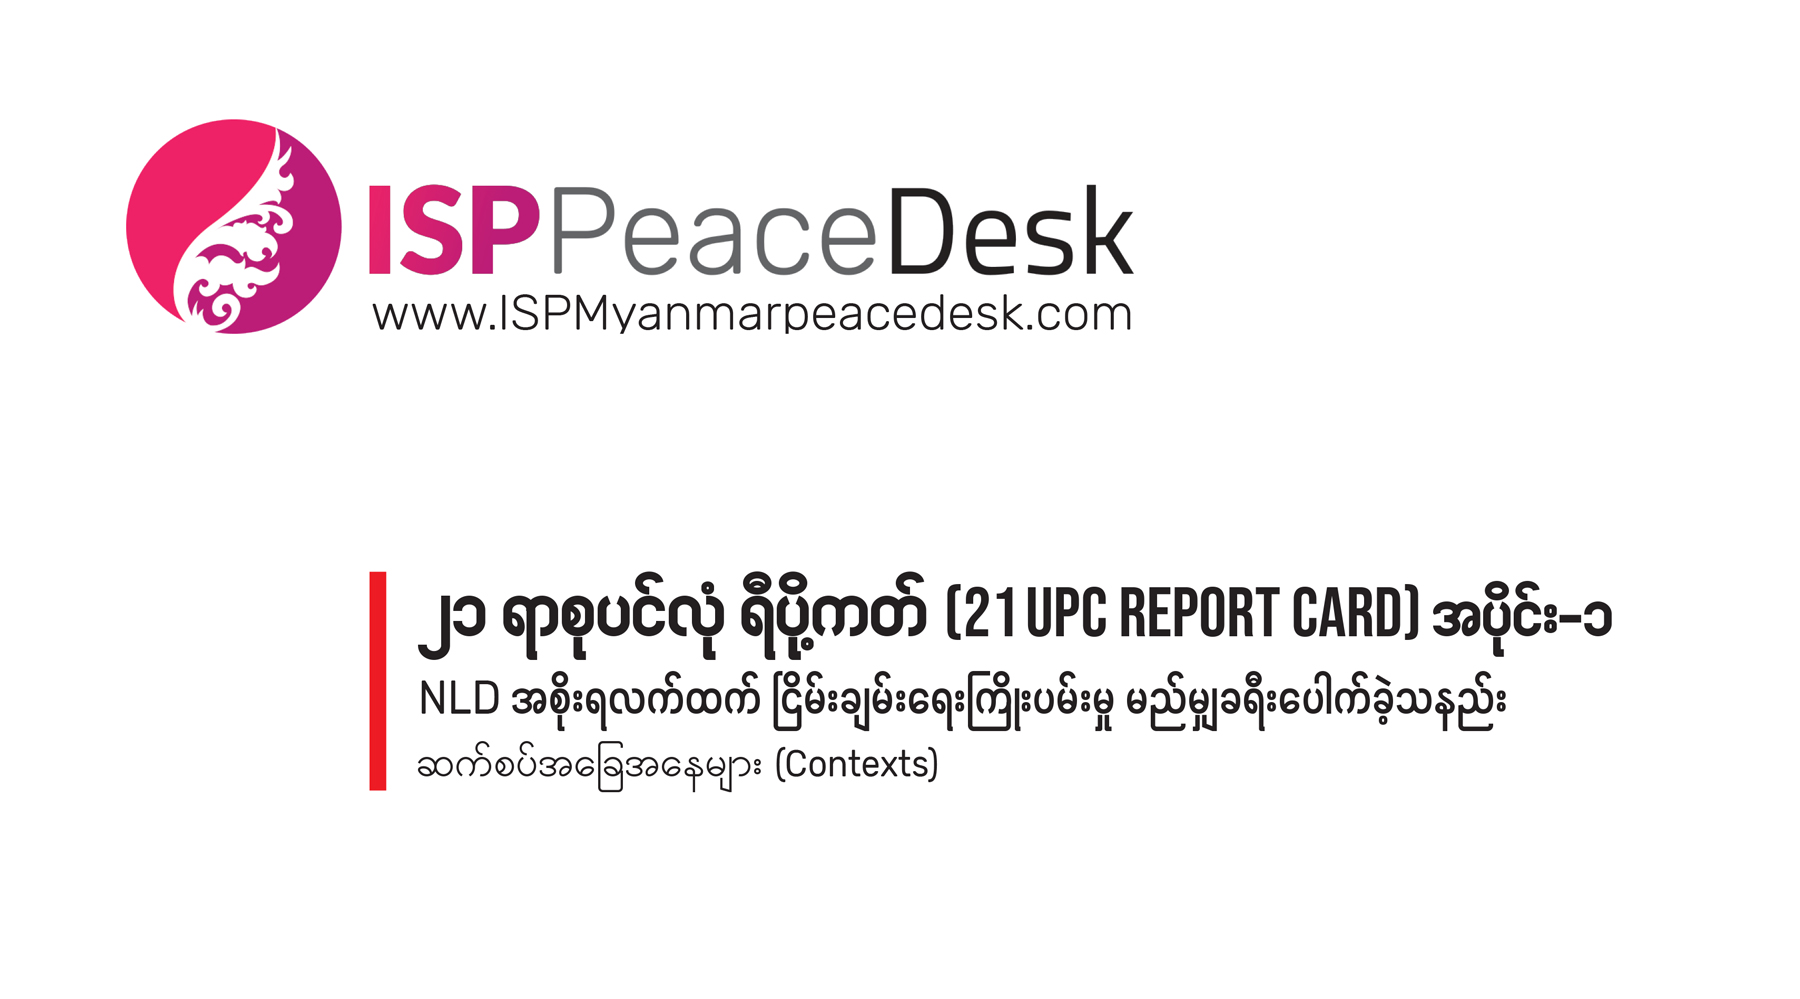 ၂၁ ရာစုပင်လုံ ရီပို့ကတ် (21 UPC Report Card) အပိုင်း ၁    NLD အစိုးရလက်ထက် ငြိမ်းချမ်းရေးကြိုးပမ်းမှု မည်မျှ ခရီးပေါက်ခဲ့သနည်း